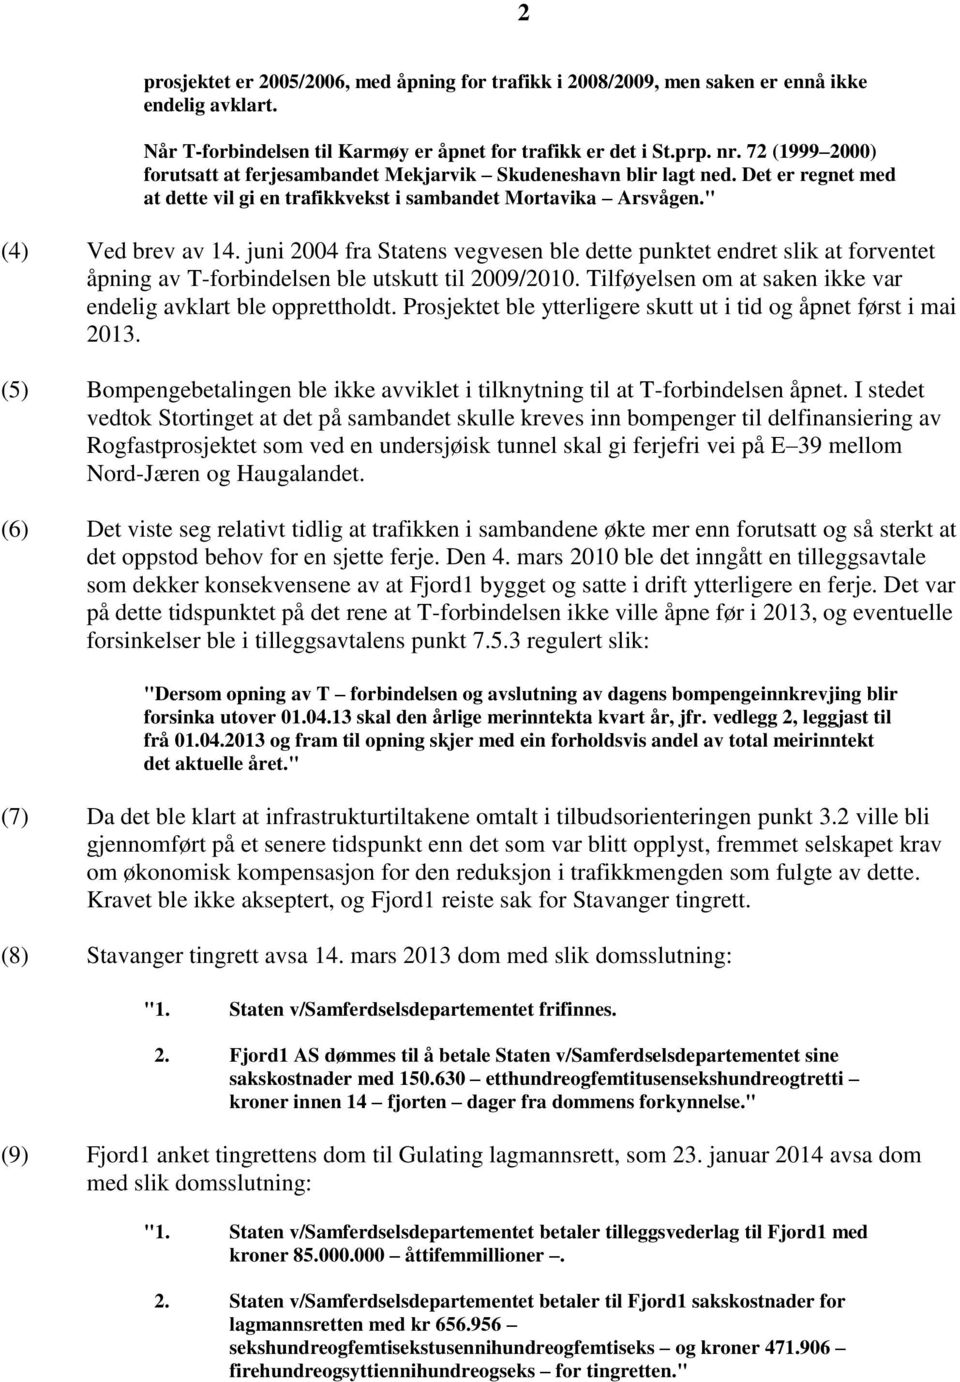 juni 2004 fra Statens vegvesen ble dette punktet endret slik at forventet åpning av T-forbindelsen ble utskutt til 2009/2010. Tilføyelsen om at saken ikke var endelig avklart ble opprettholdt.